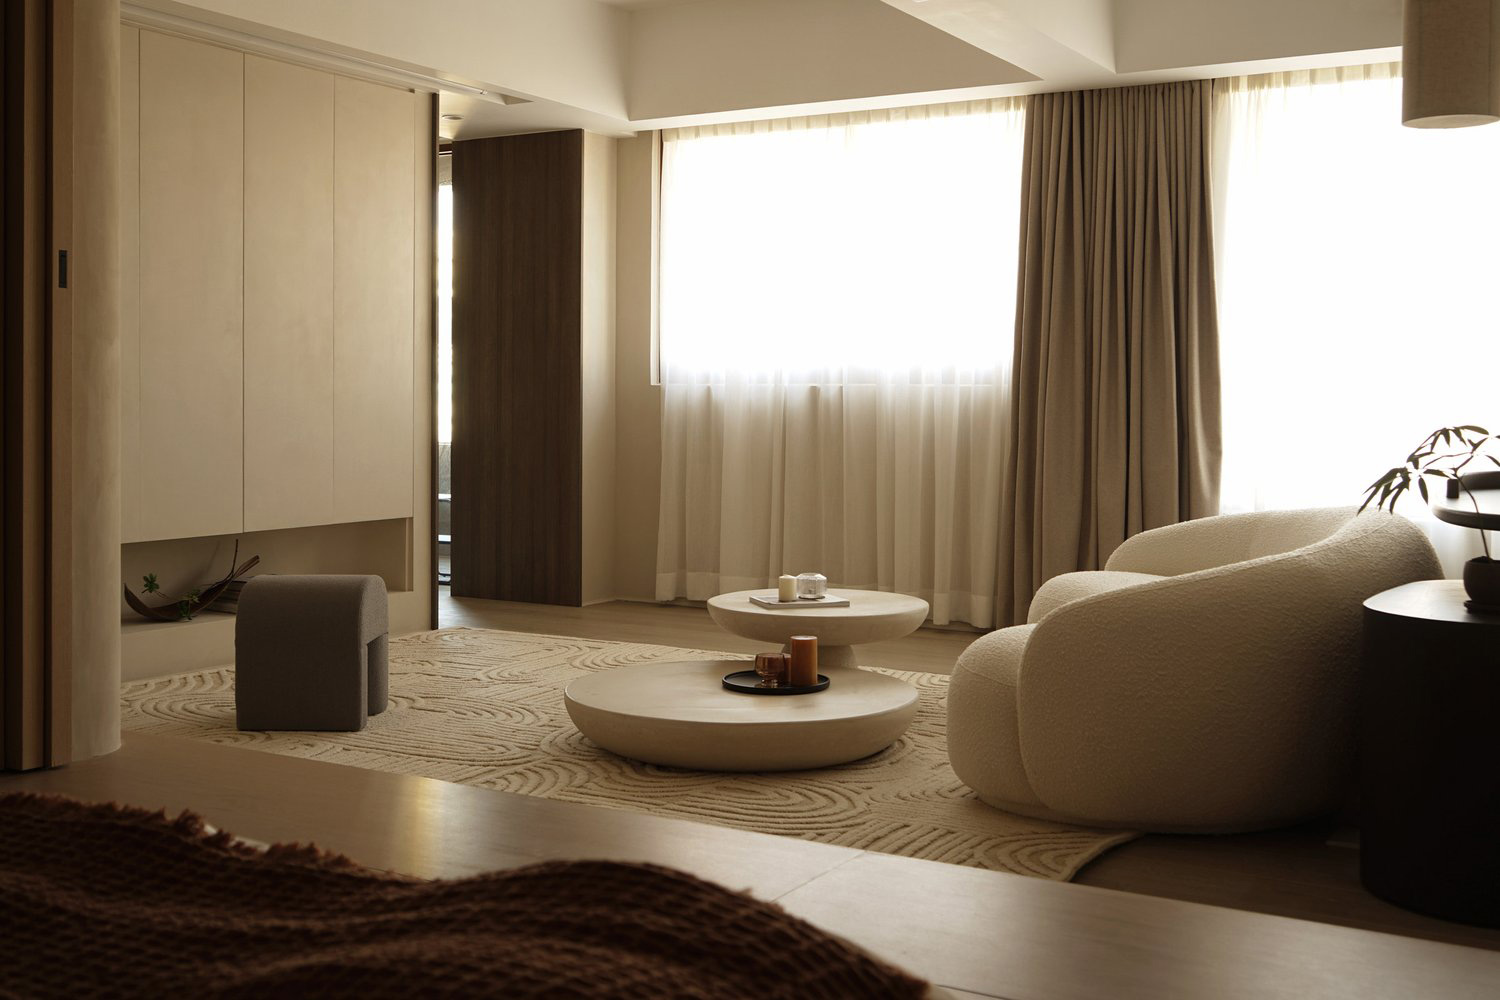 JAAK,香港,公寓设计,家装设计,公寓设计案例,原木色,75㎡,侘寂风格,单身公寓,Wabi-sabi